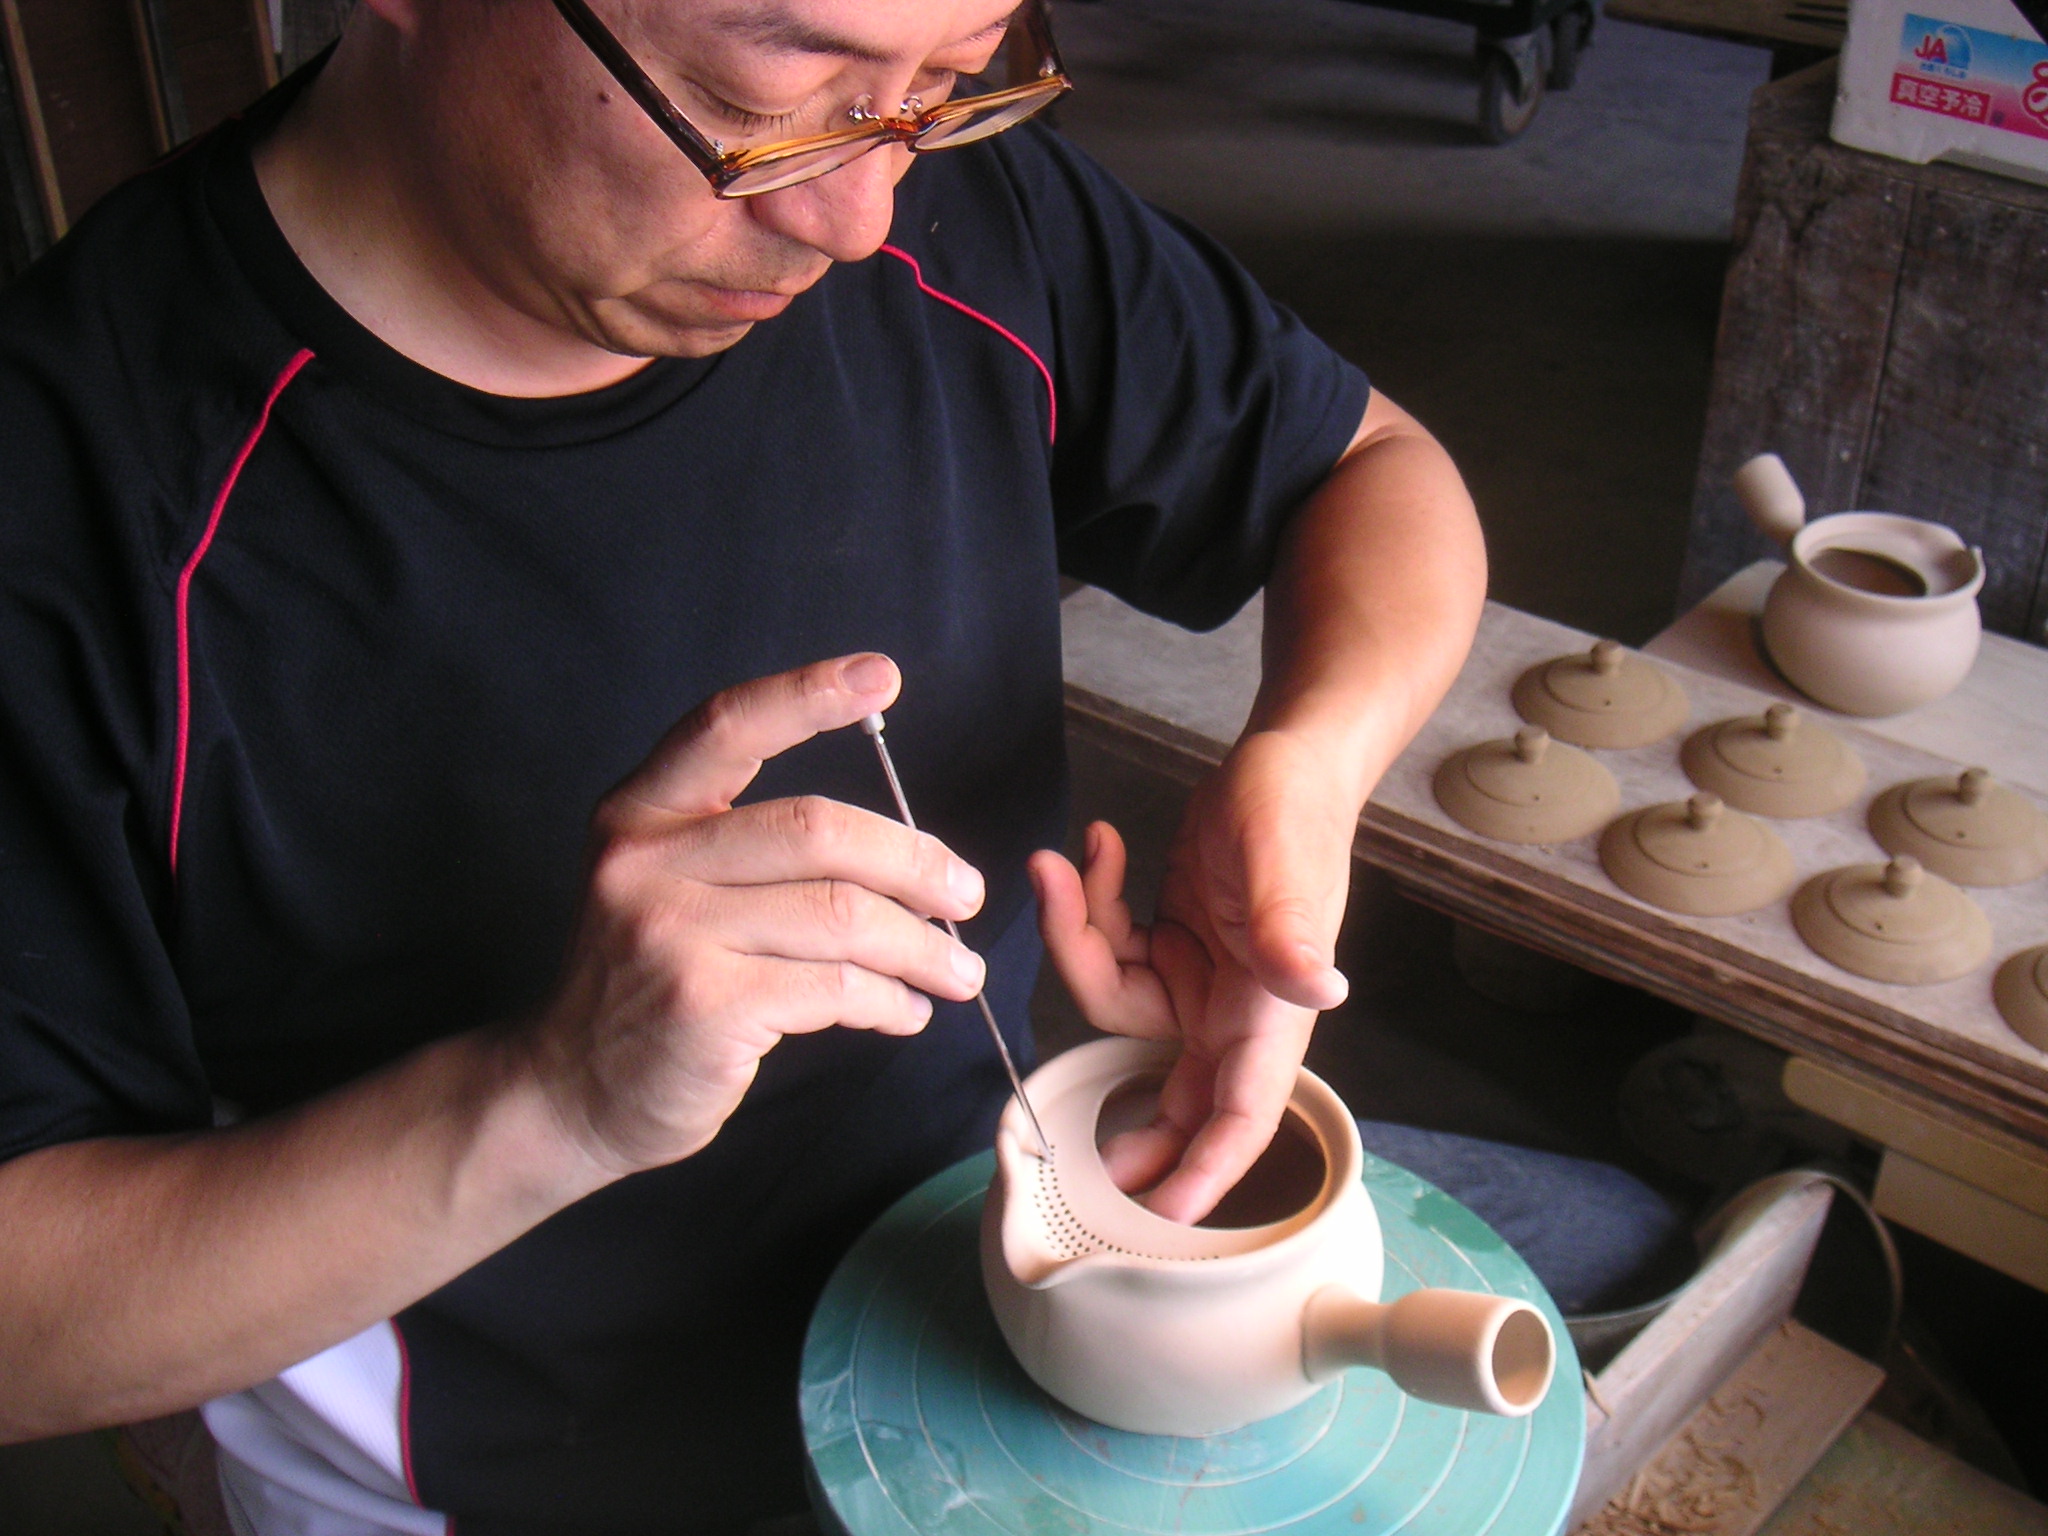 Kyusu-teapot "Shiko" small, Banko-Yaki, 350 ml